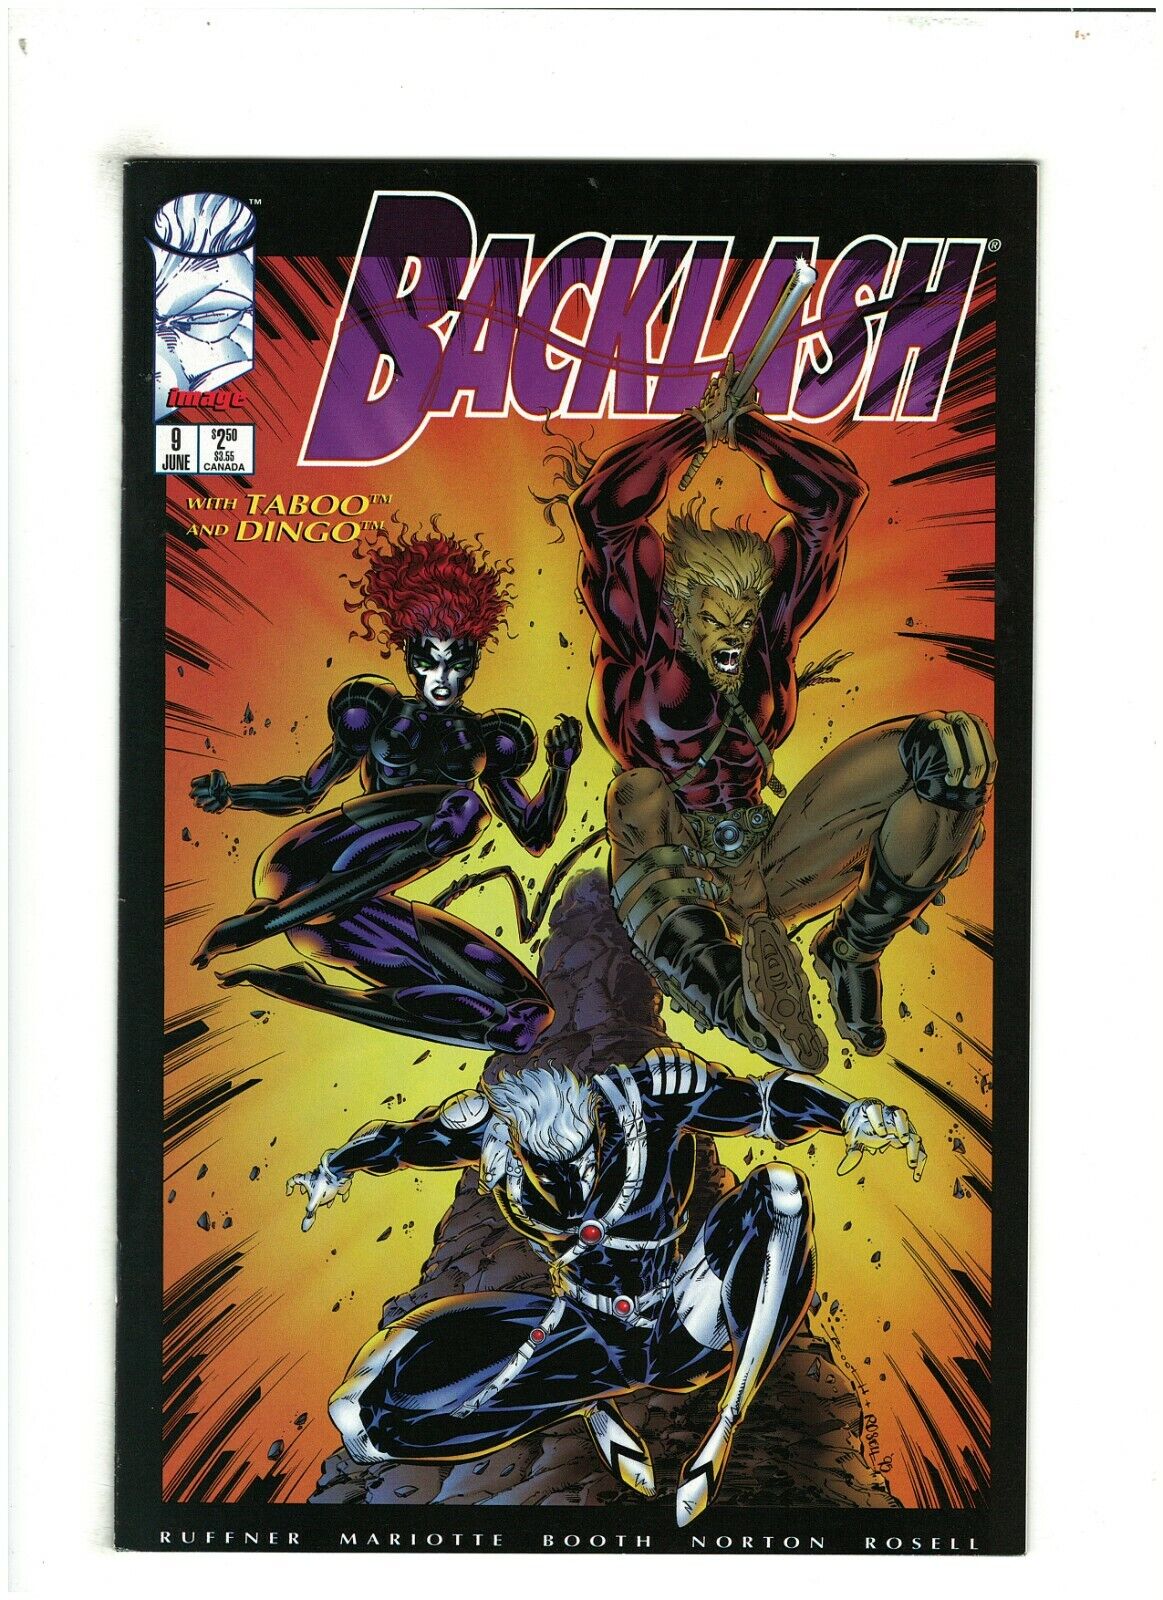 Backlash #9 VF/NM 9.0 Image Comics 1995 Brett Booth